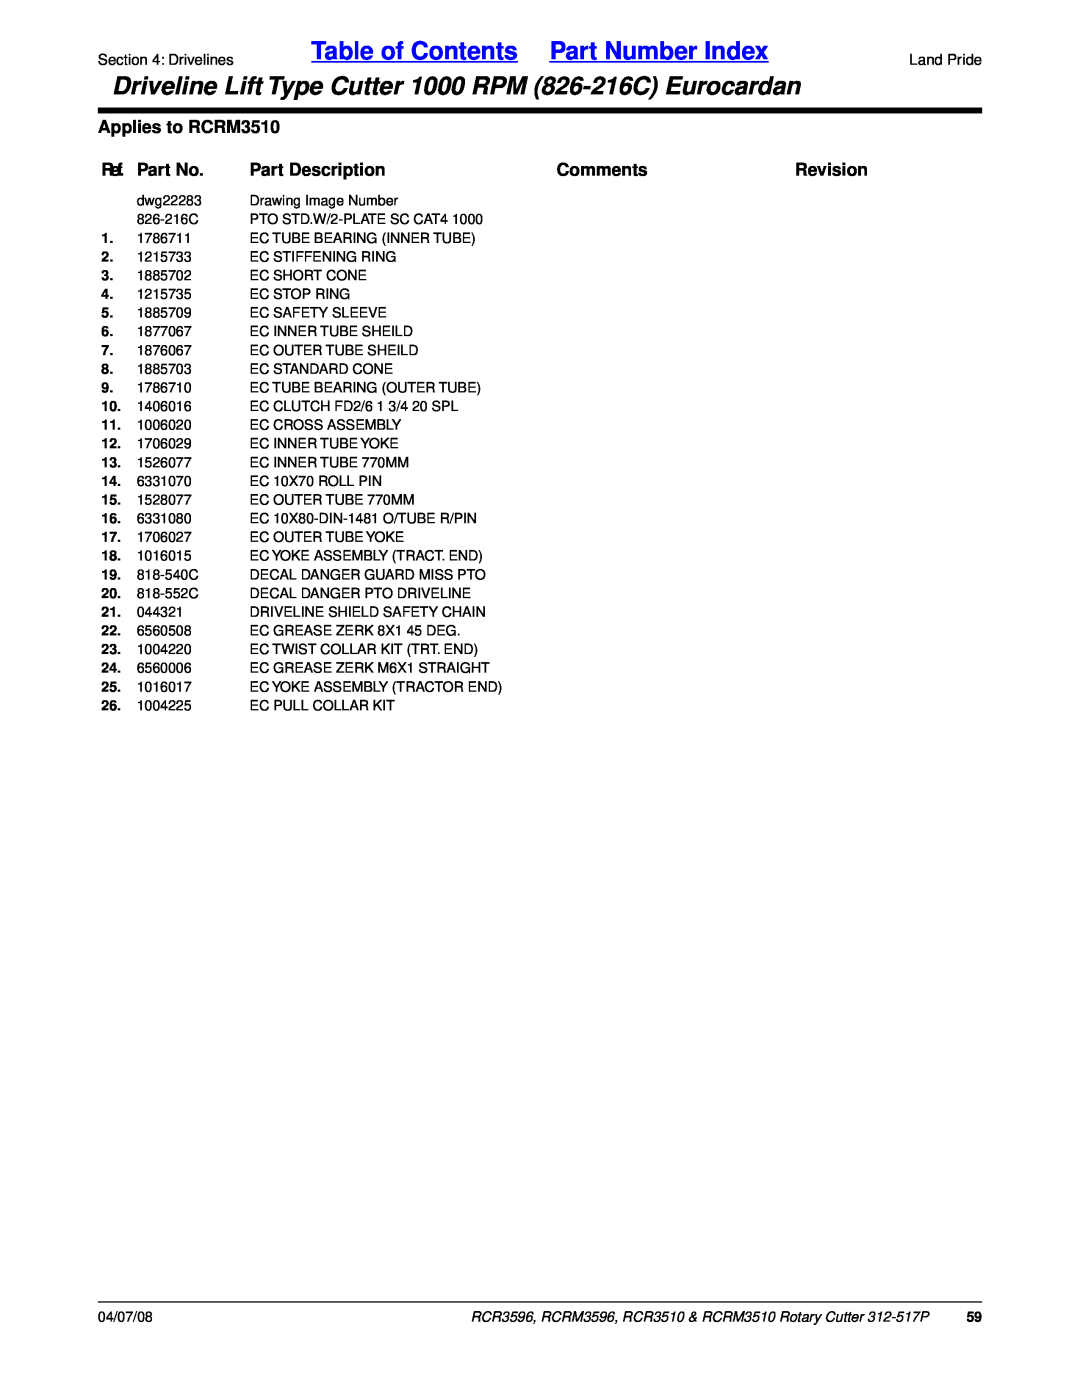 Land Pride RCR3596 Table of Contents Part Number Index, Applies to RCRM3510, Ref. Part No, Part Description, Comments 